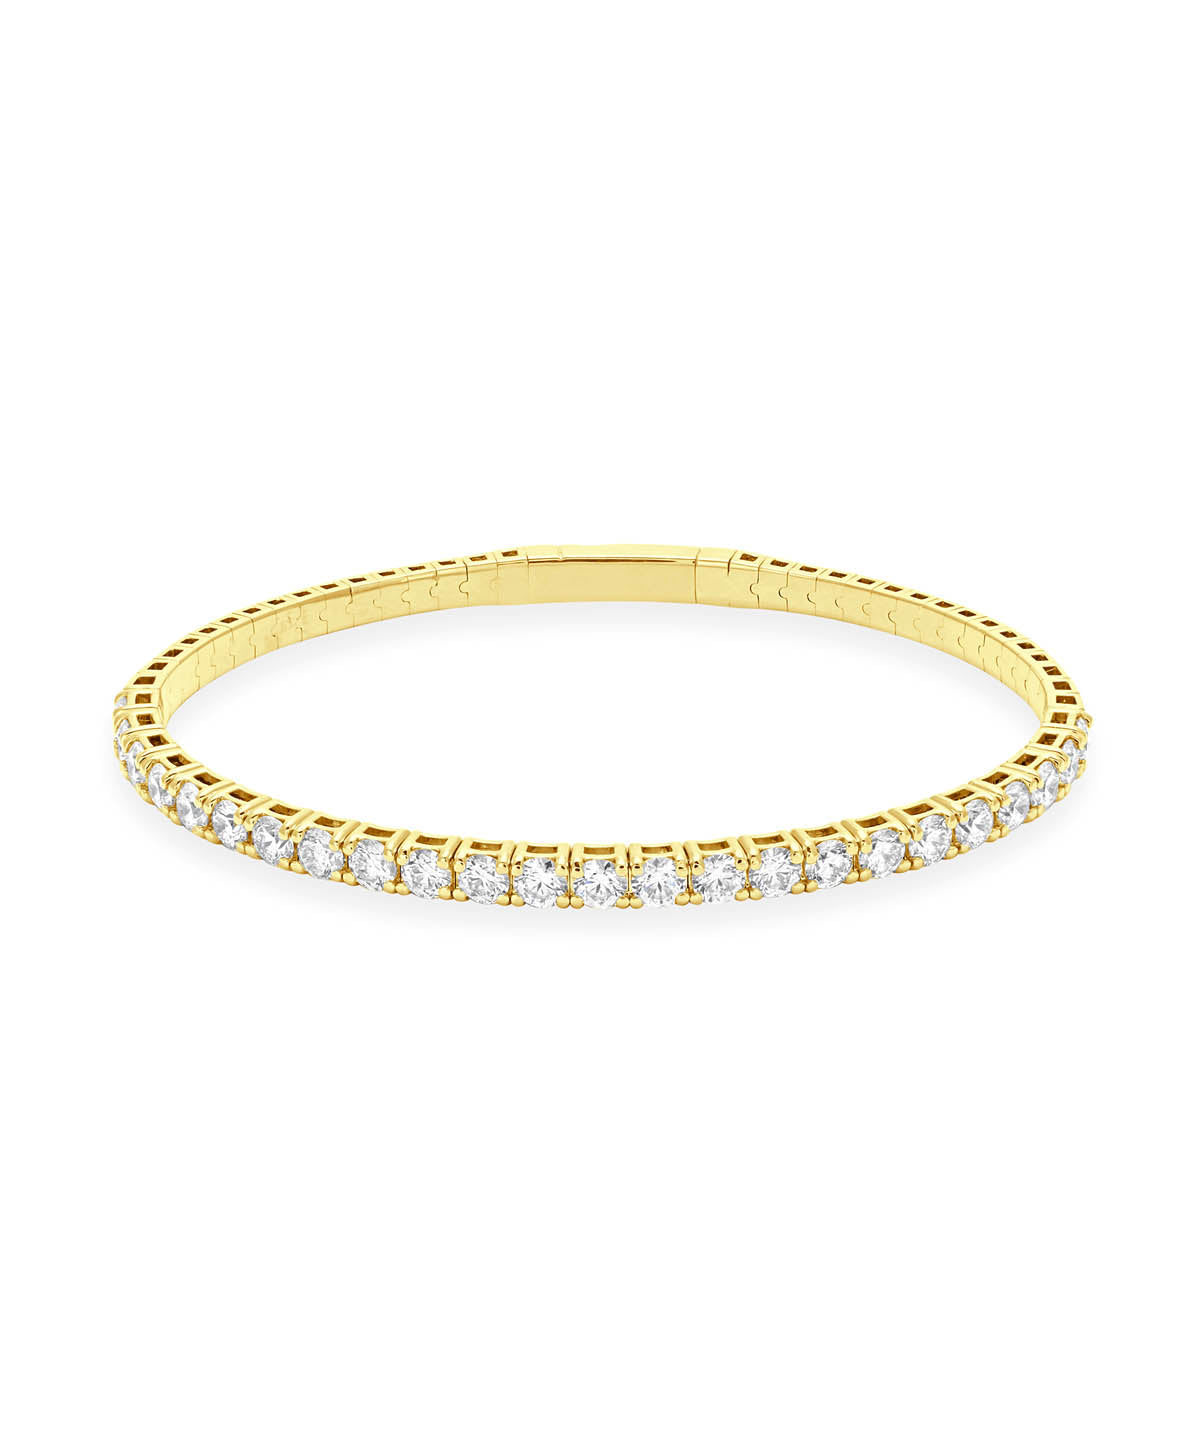 14K Yellow Gold Diamond Flexible Bangle Bracelet 4.05cttw